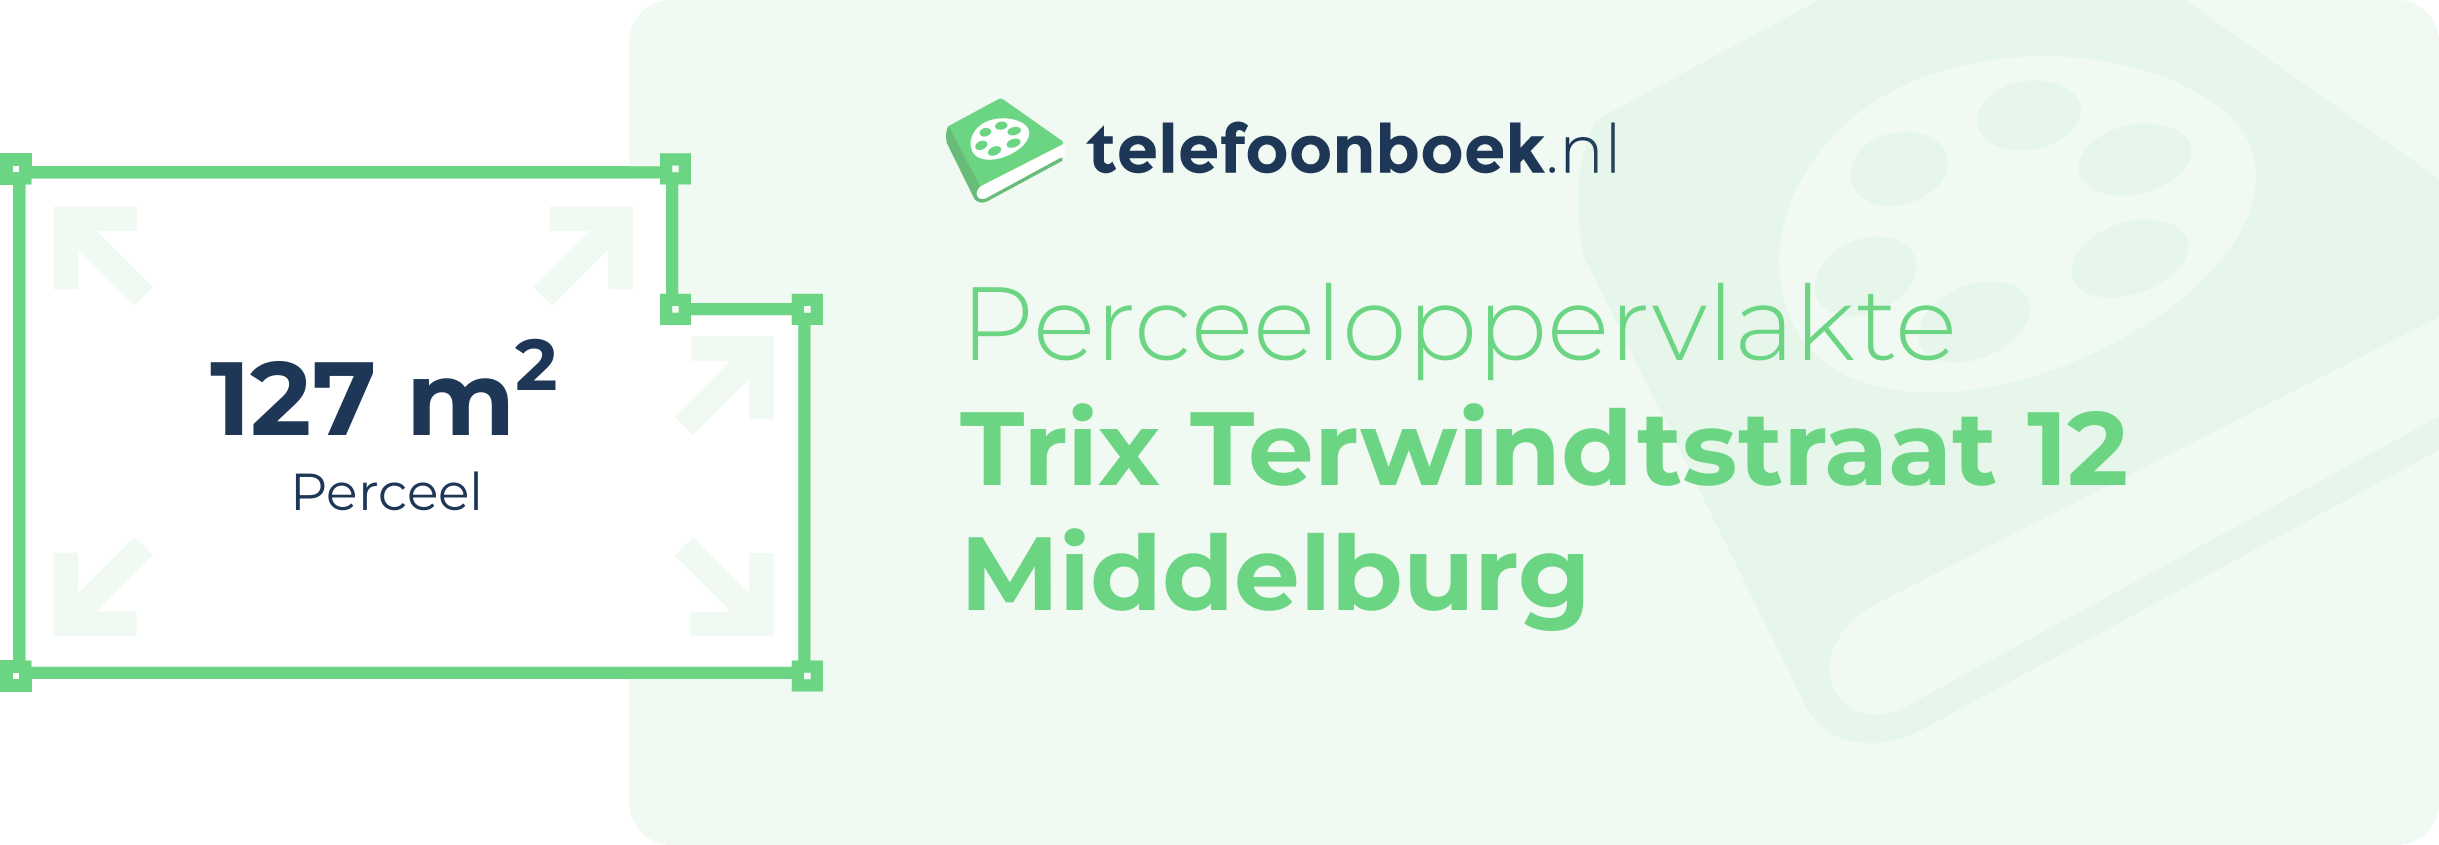 Perceeloppervlakte Trix Terwindtstraat 12 Middelburg